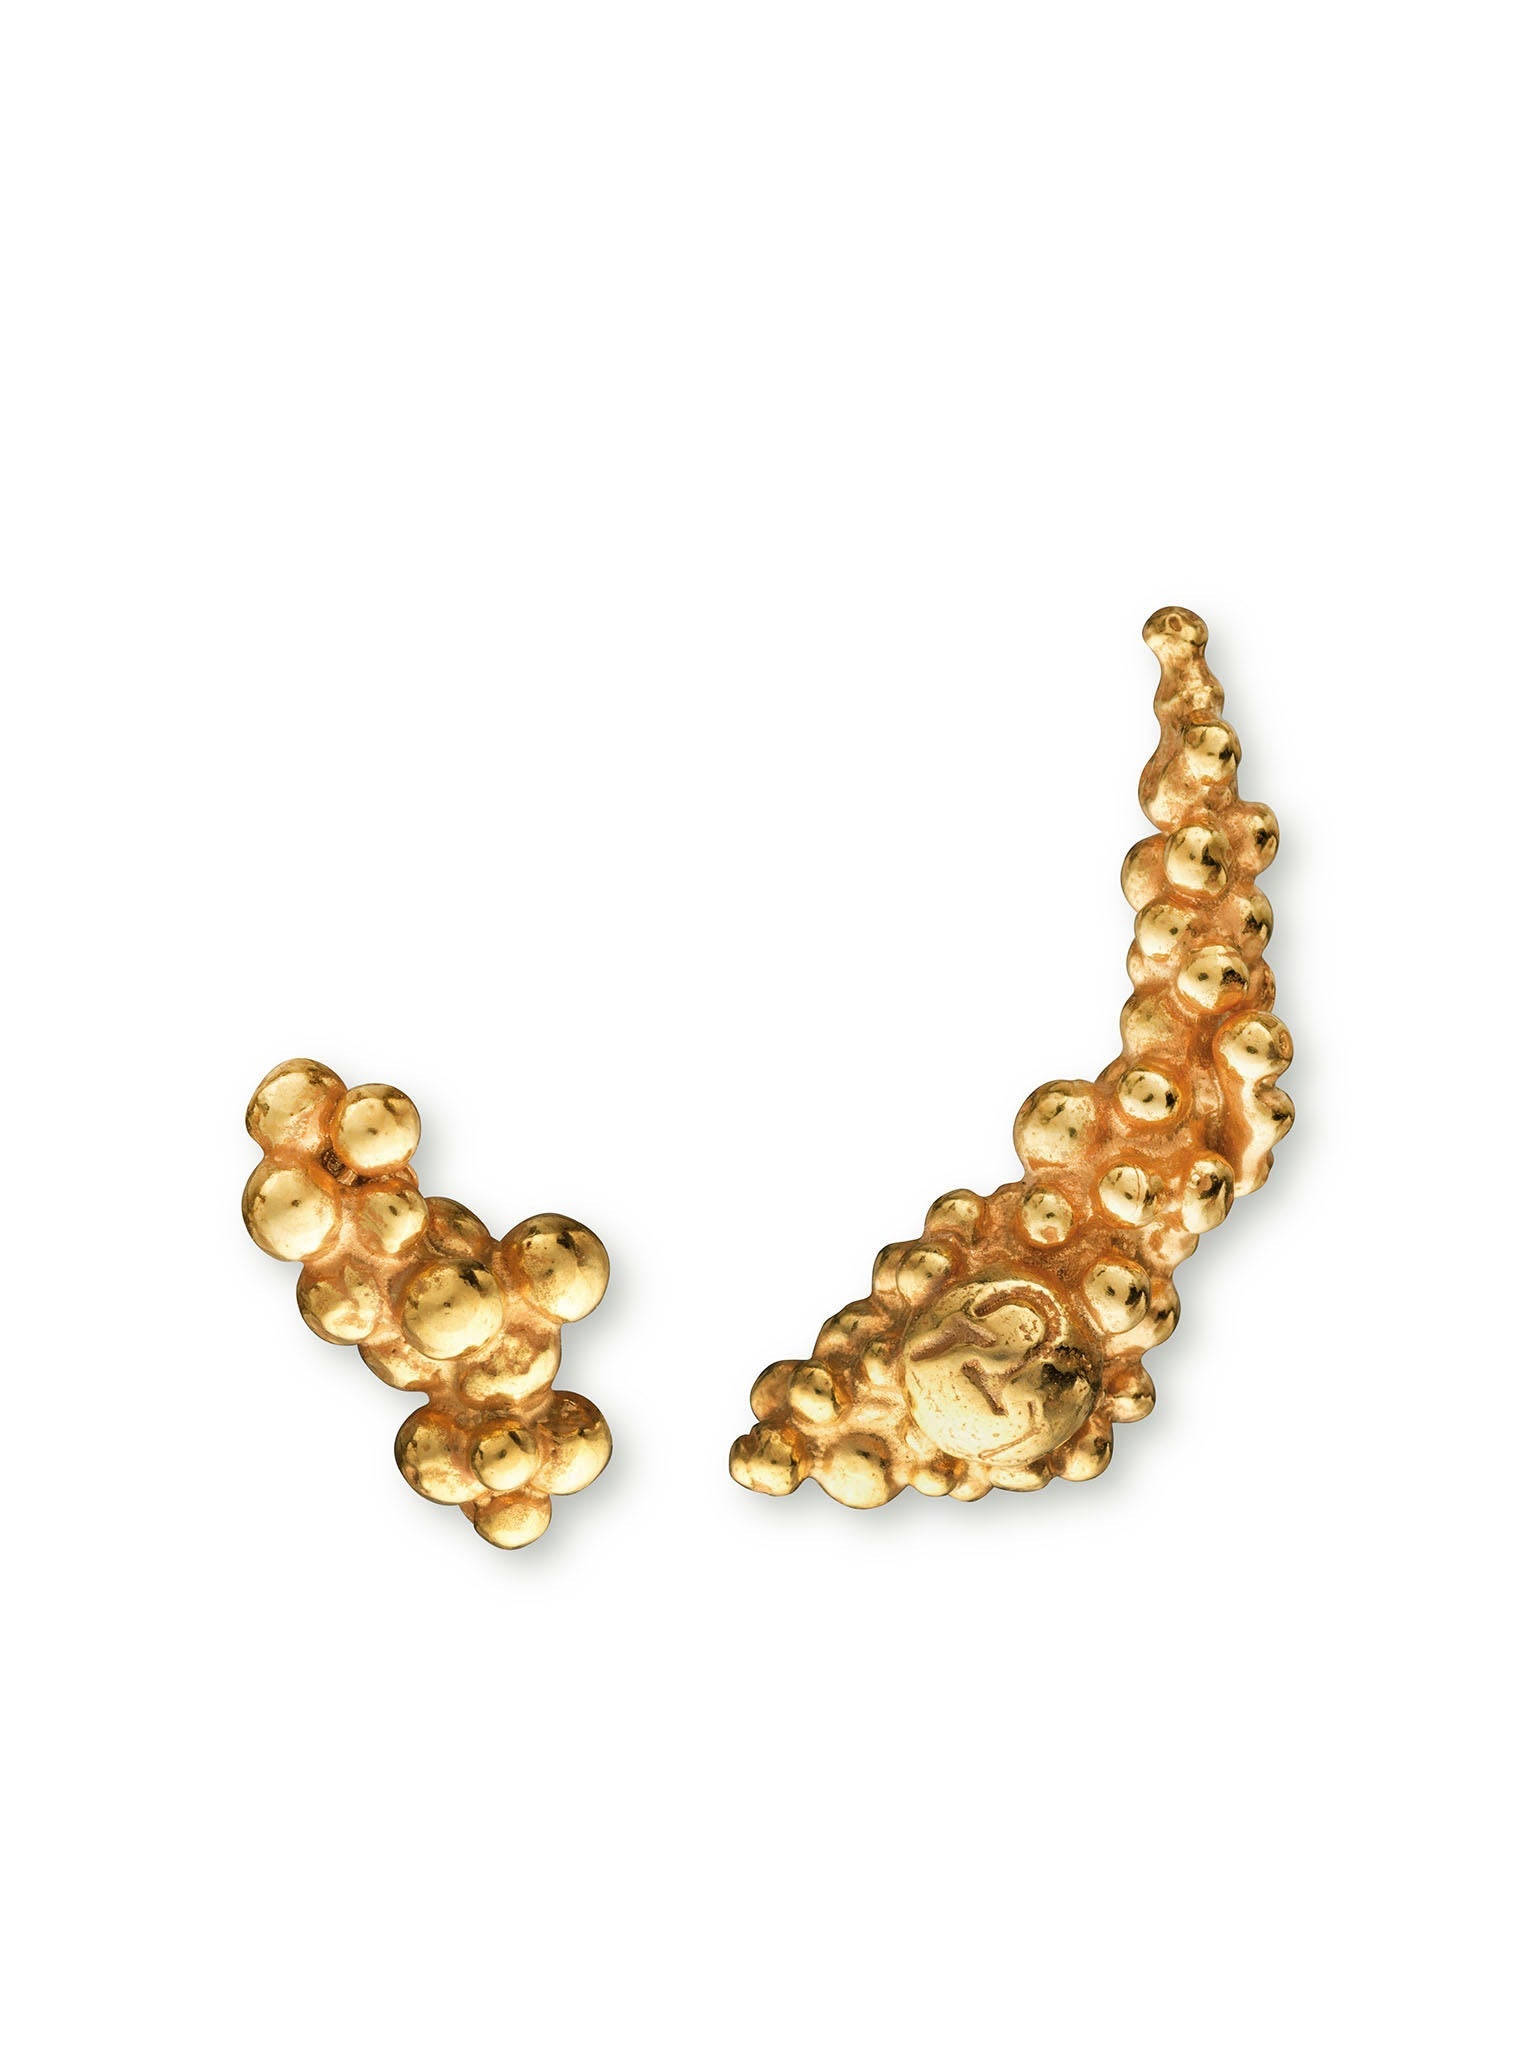 Céleste Deux Asymmetrical Stud Earrings 14ct Gold